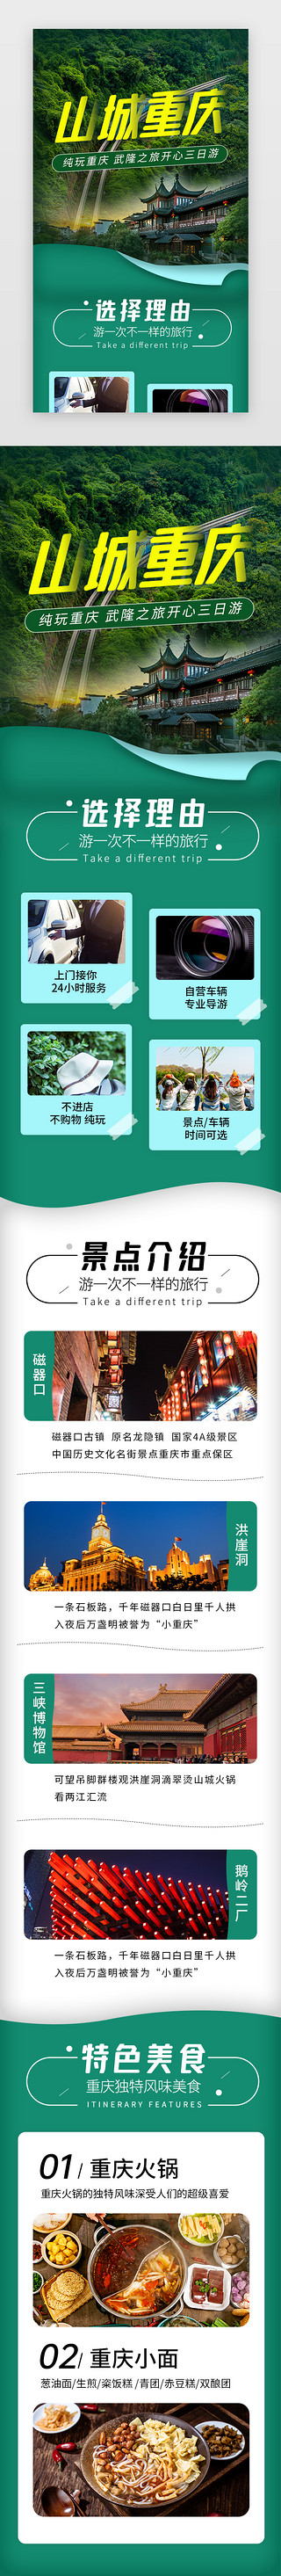 亲子海边旅游UI设计素材_山城重庆旅游景点介绍H5长图